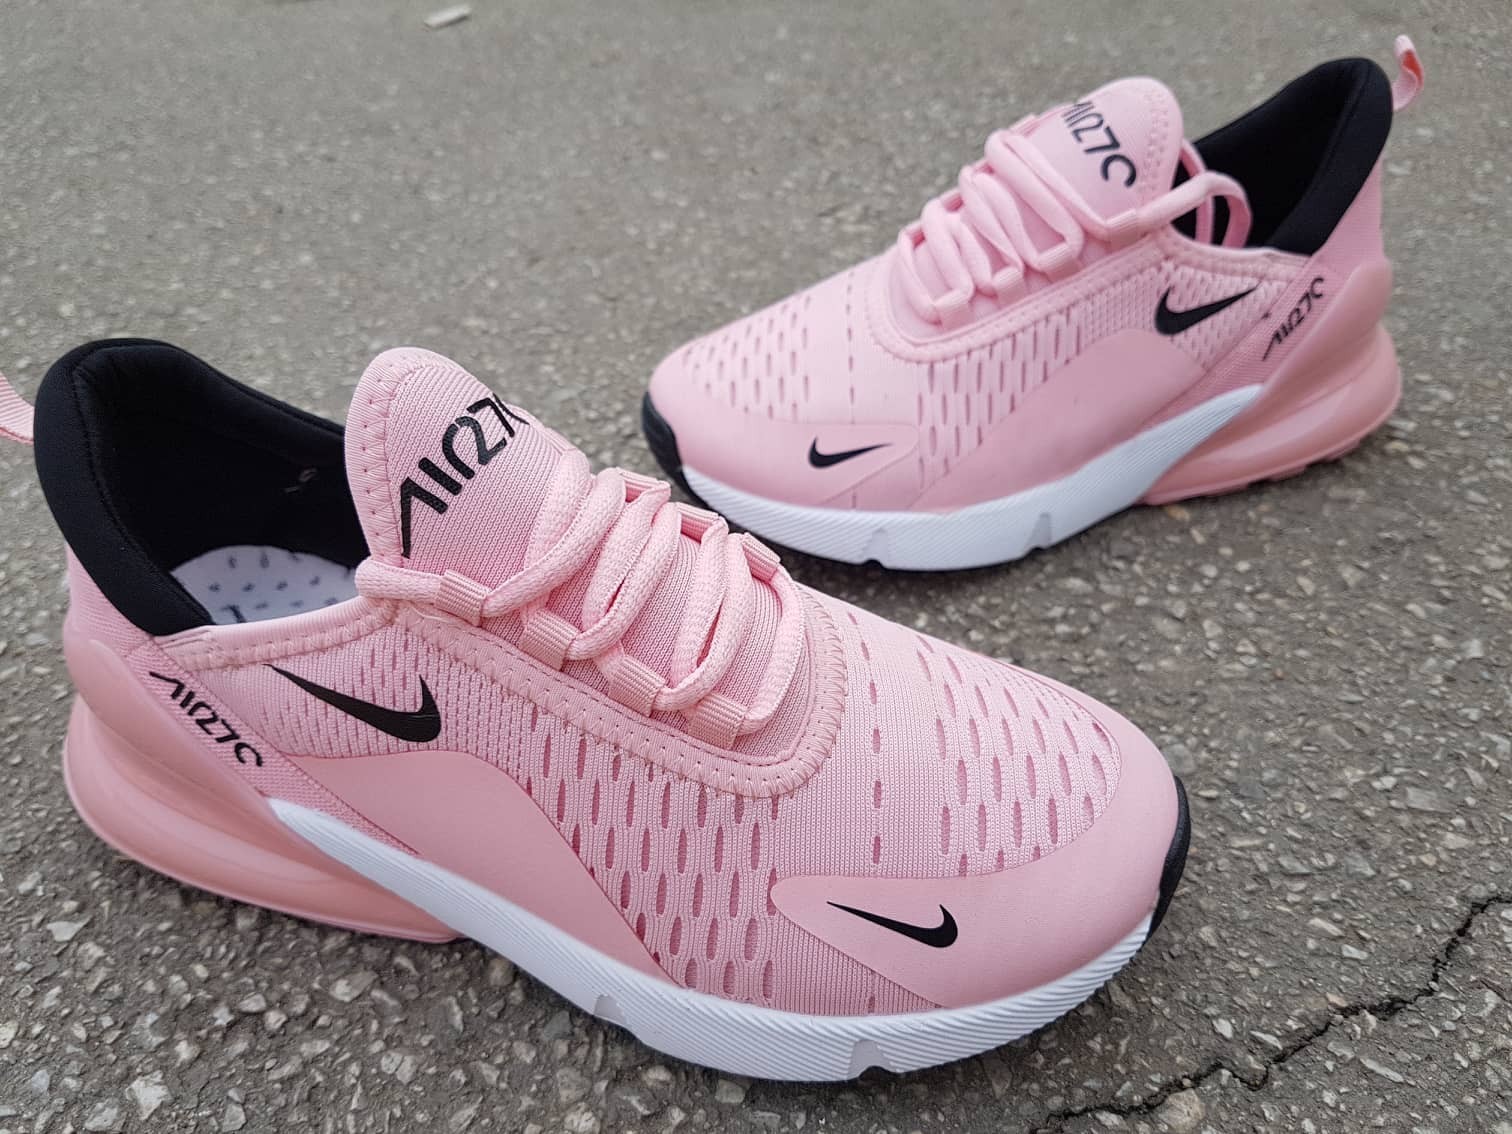 Inclinado Ambicioso Estar confundido Nike air max 270 roze ženske patike NOVO 36-41 - Kupindo.com (54792119)